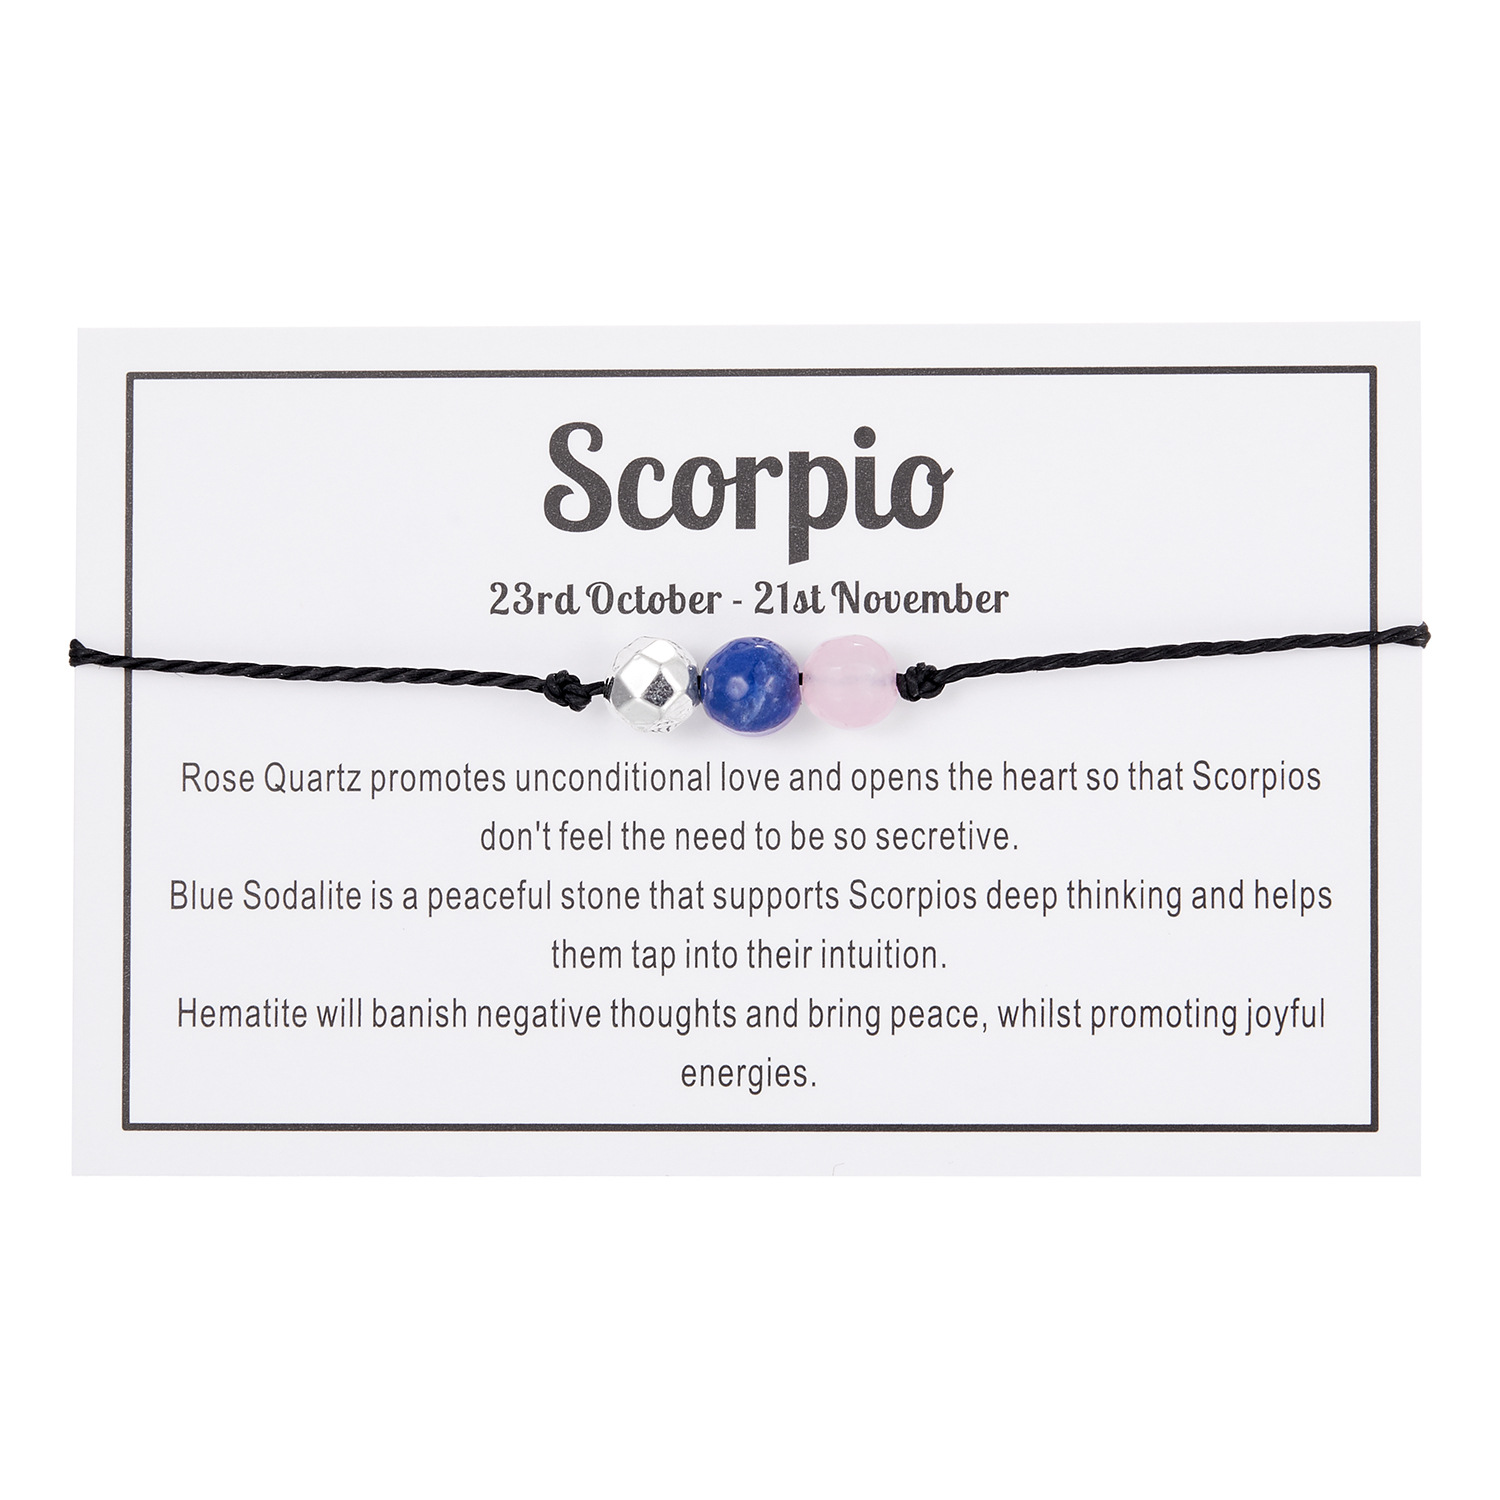 10:Scorpio